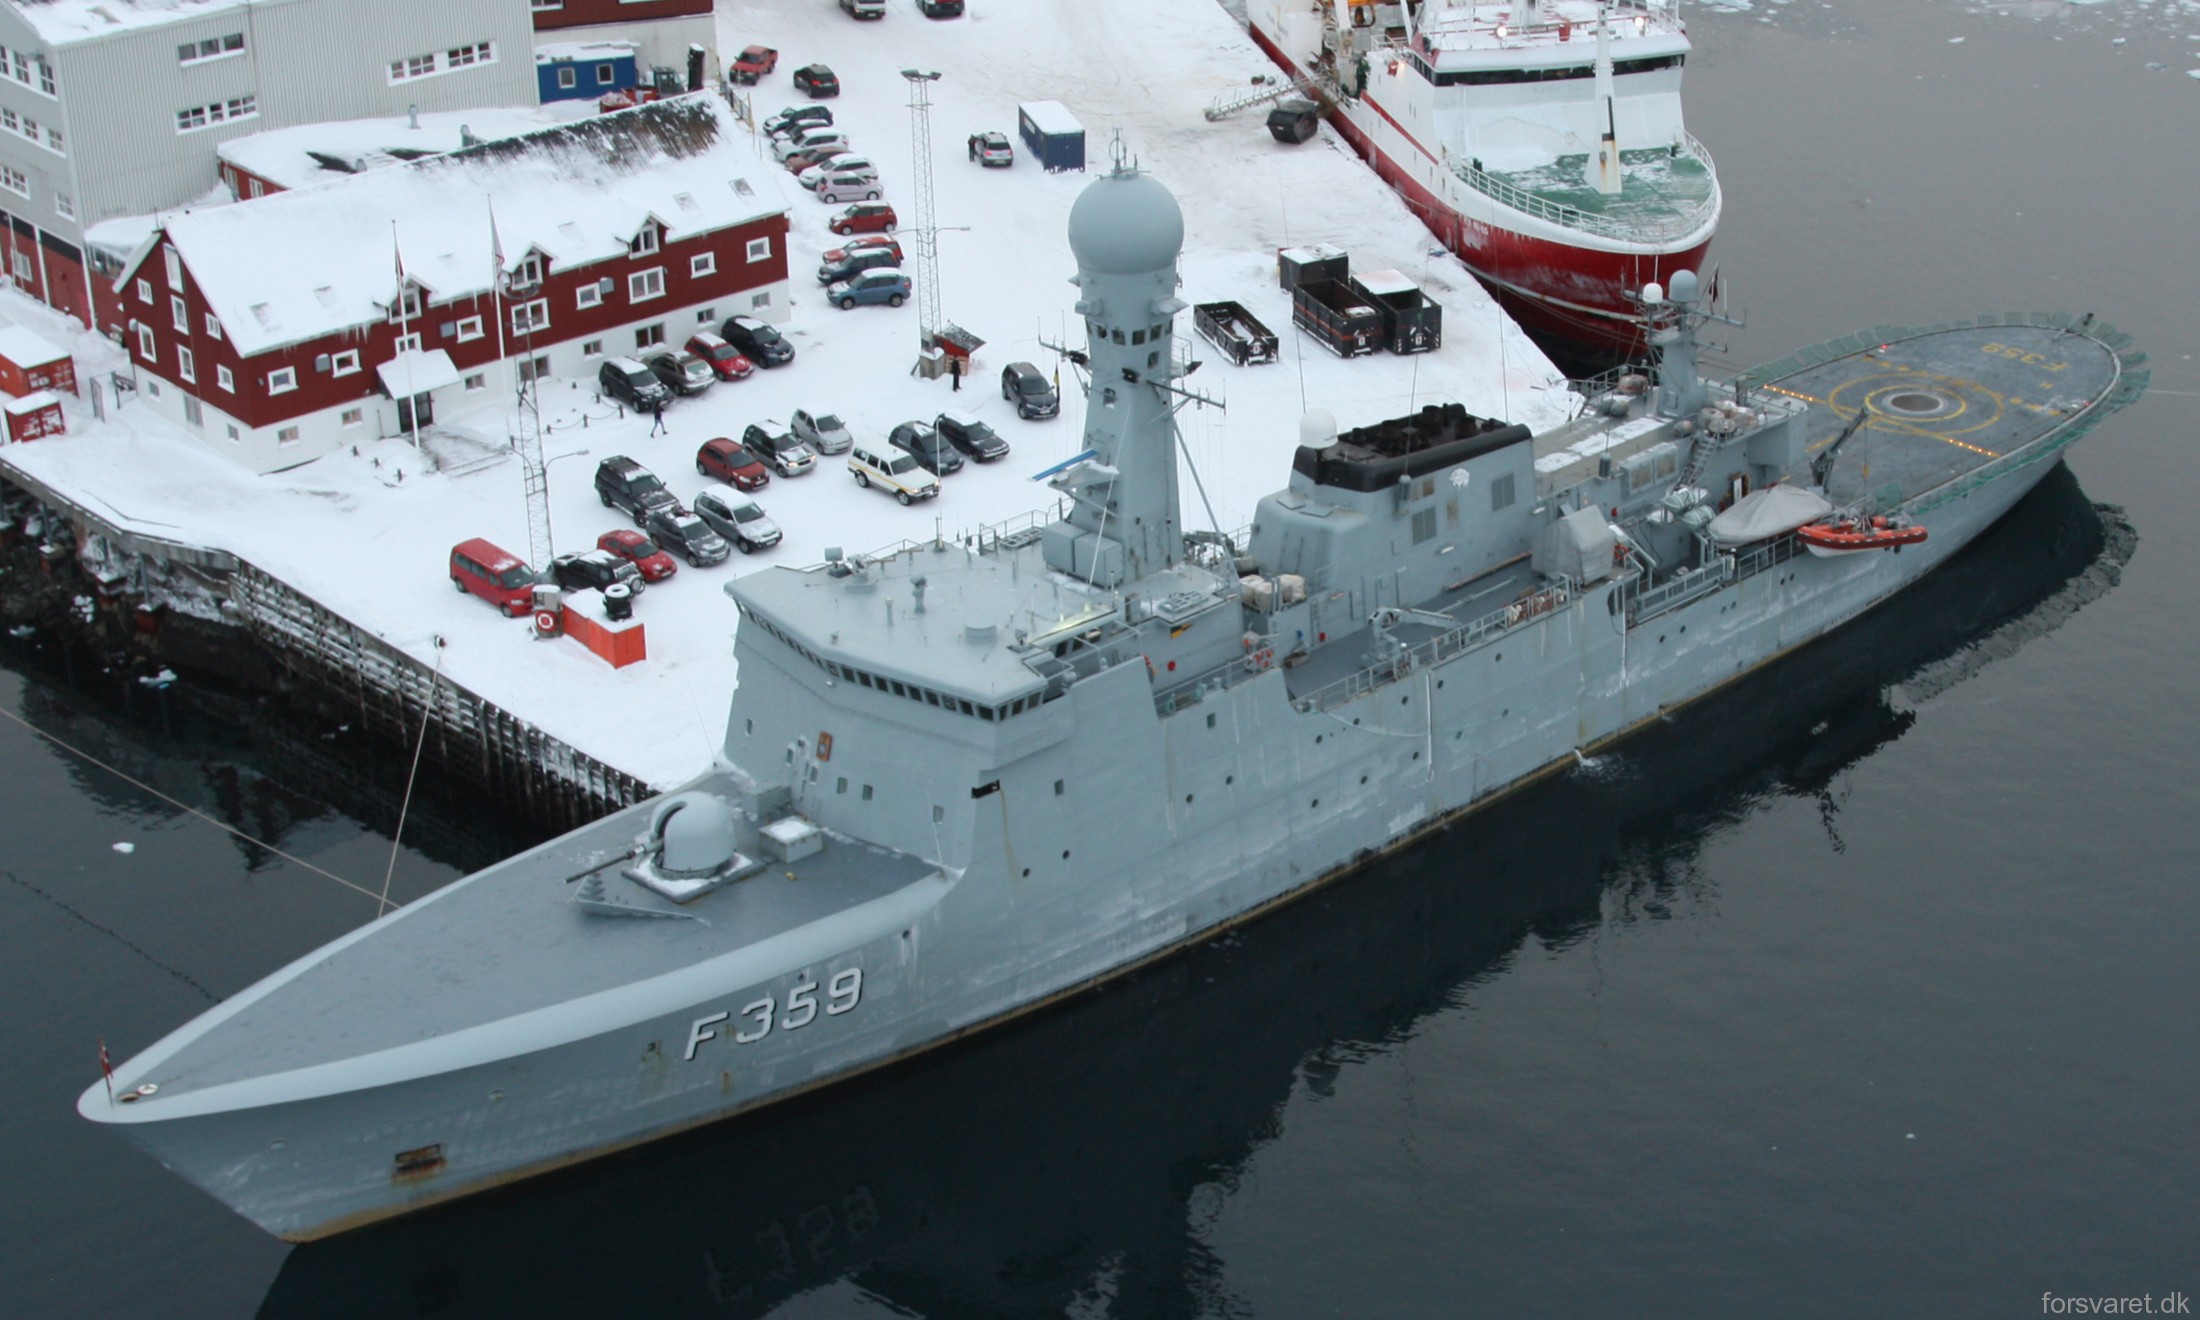 f-359 hdms vaedderen thetis class ocean patrol frigate royal danish navy kongelige danske marine kdm inspektionsskibet 12